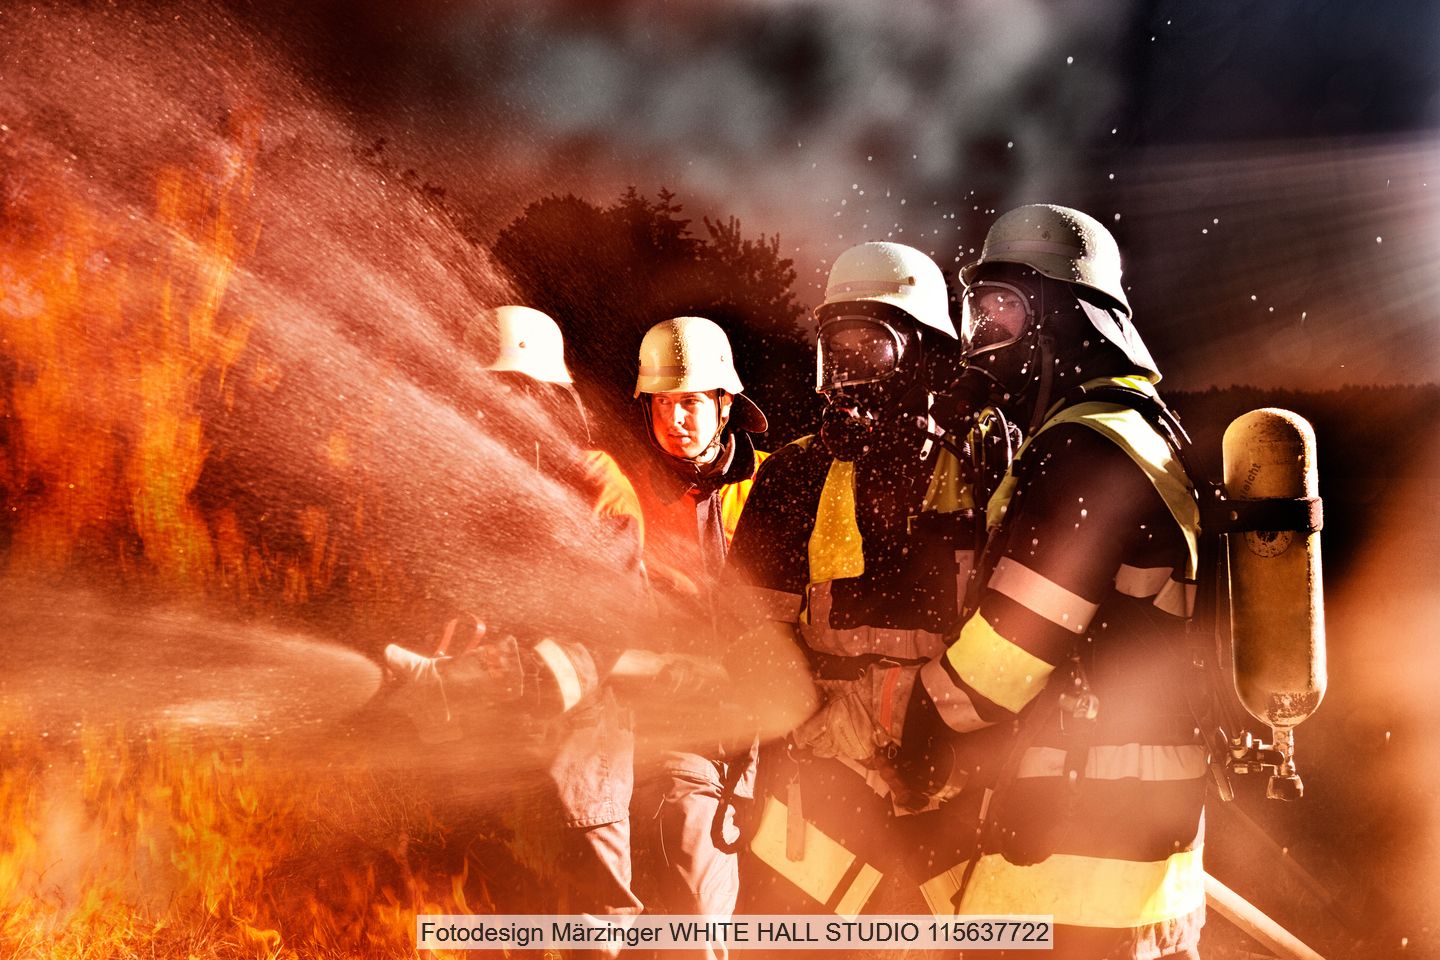 Drei Feuerwehrmänner versuchen ein Feuer zu bekämpfen und halten Schläuche in ihren Händen.